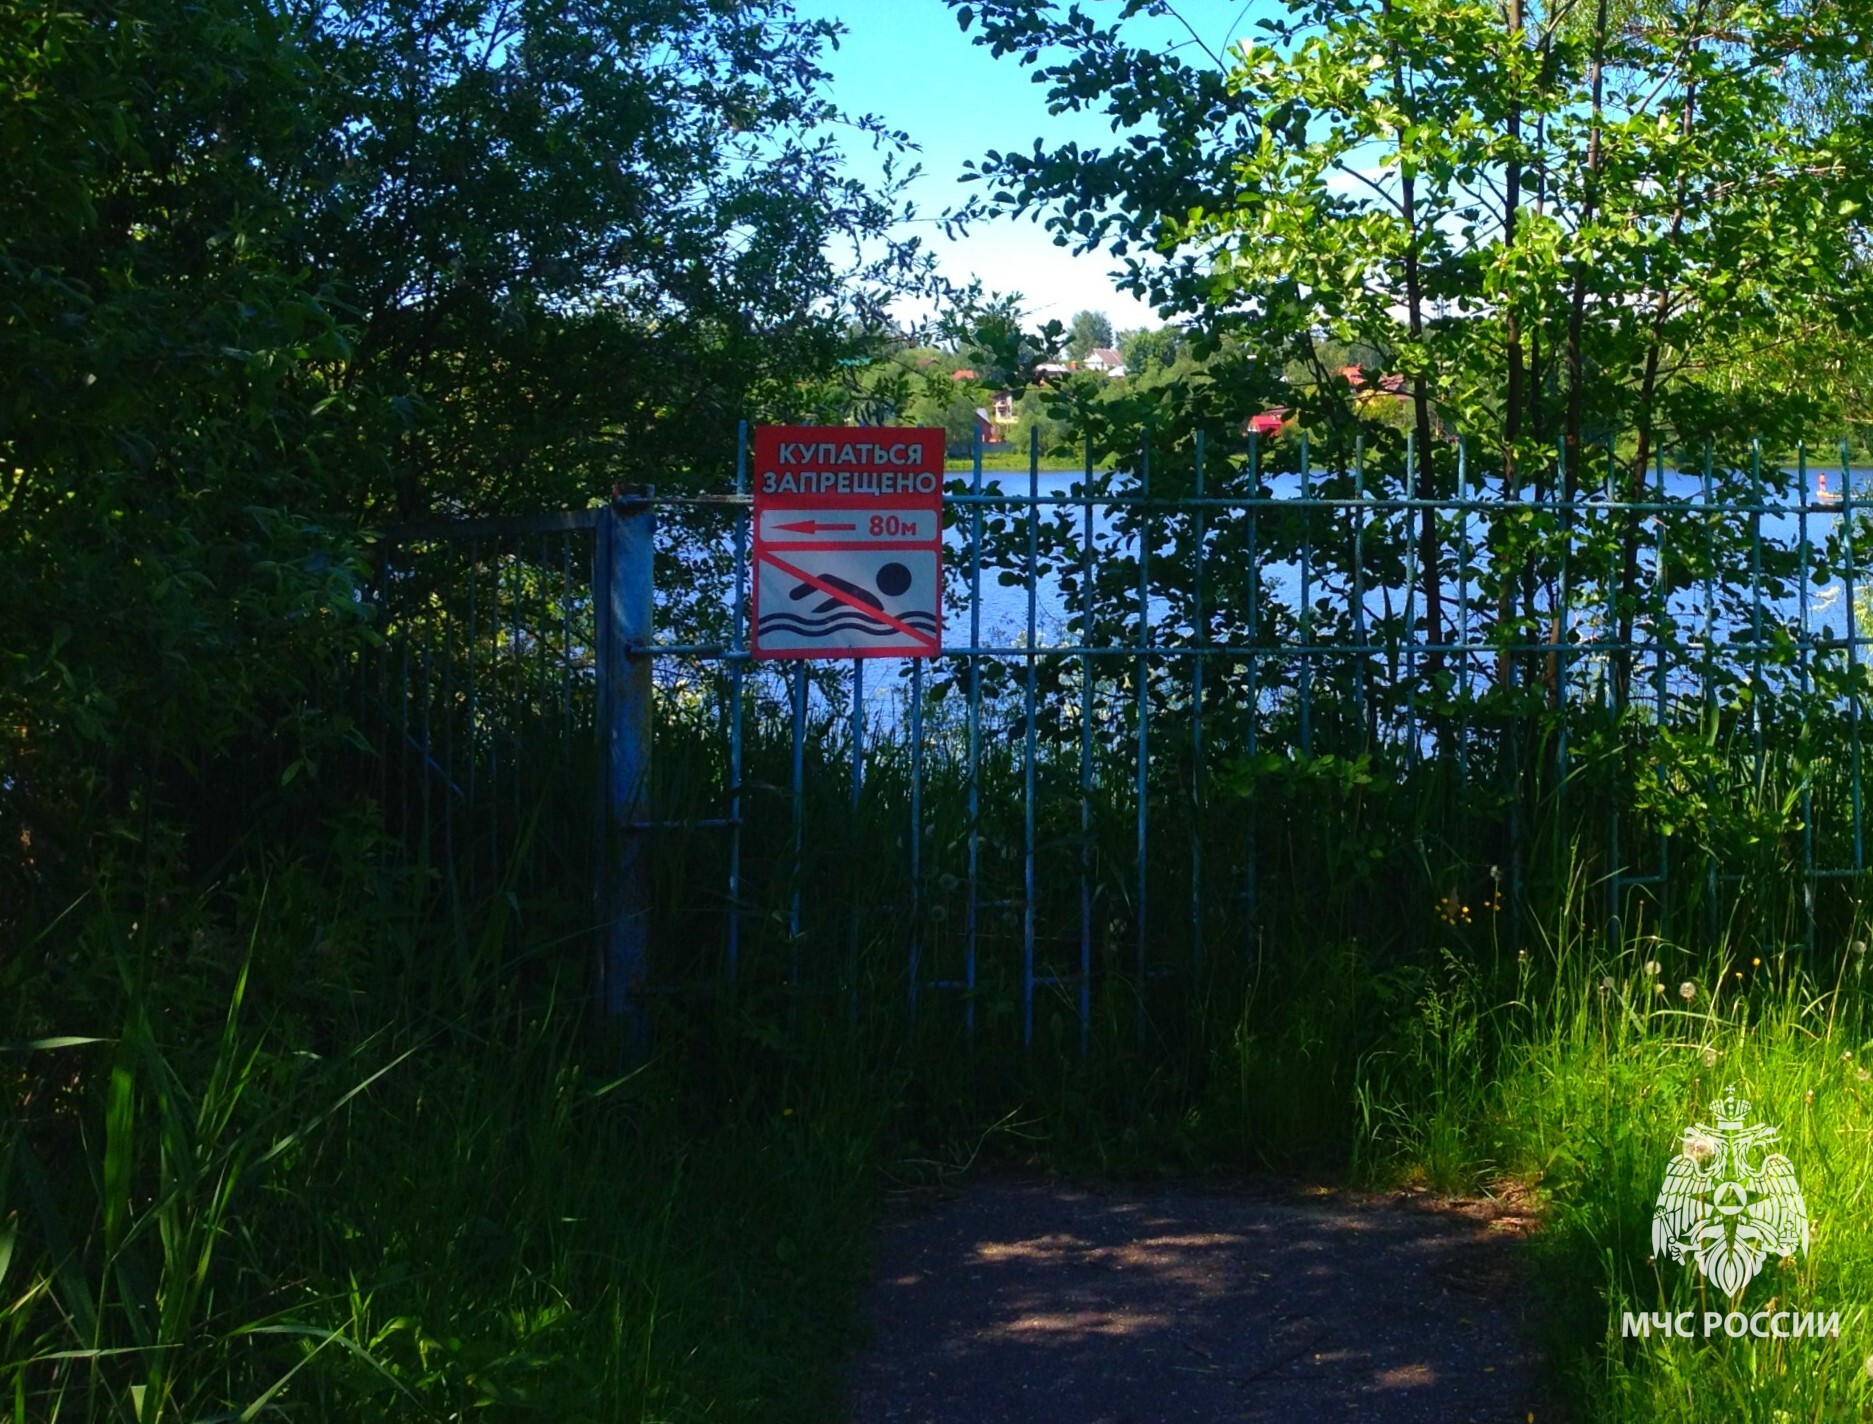 Знак «Купание запрещено!» обозначает, что данный водоем был проверен и выяснилось, что он не соответствует требованиям по обеспечению безопасного купания..